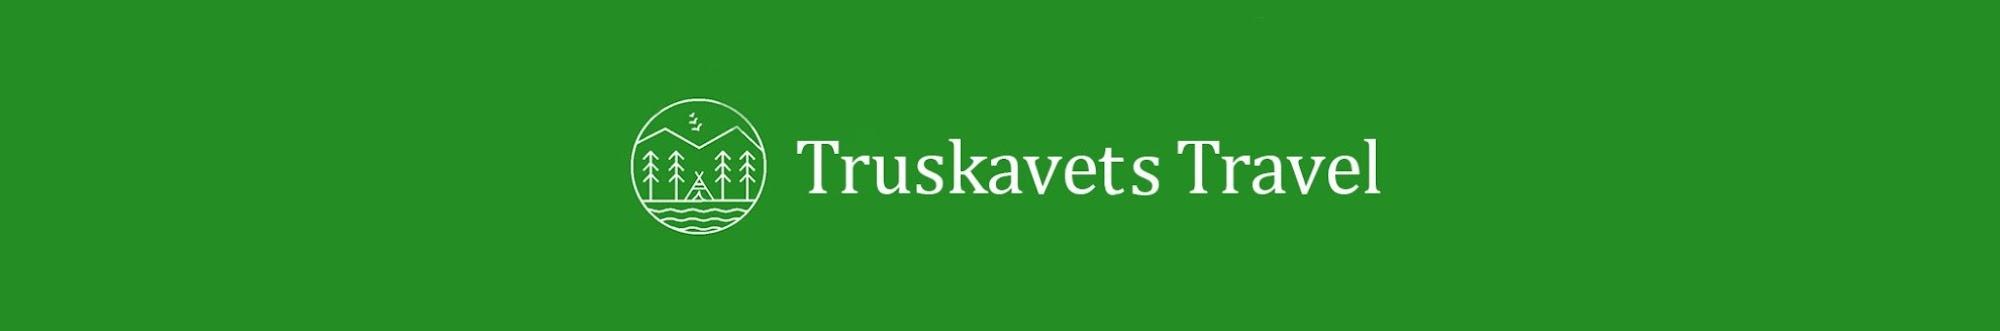 Truskavets Travel